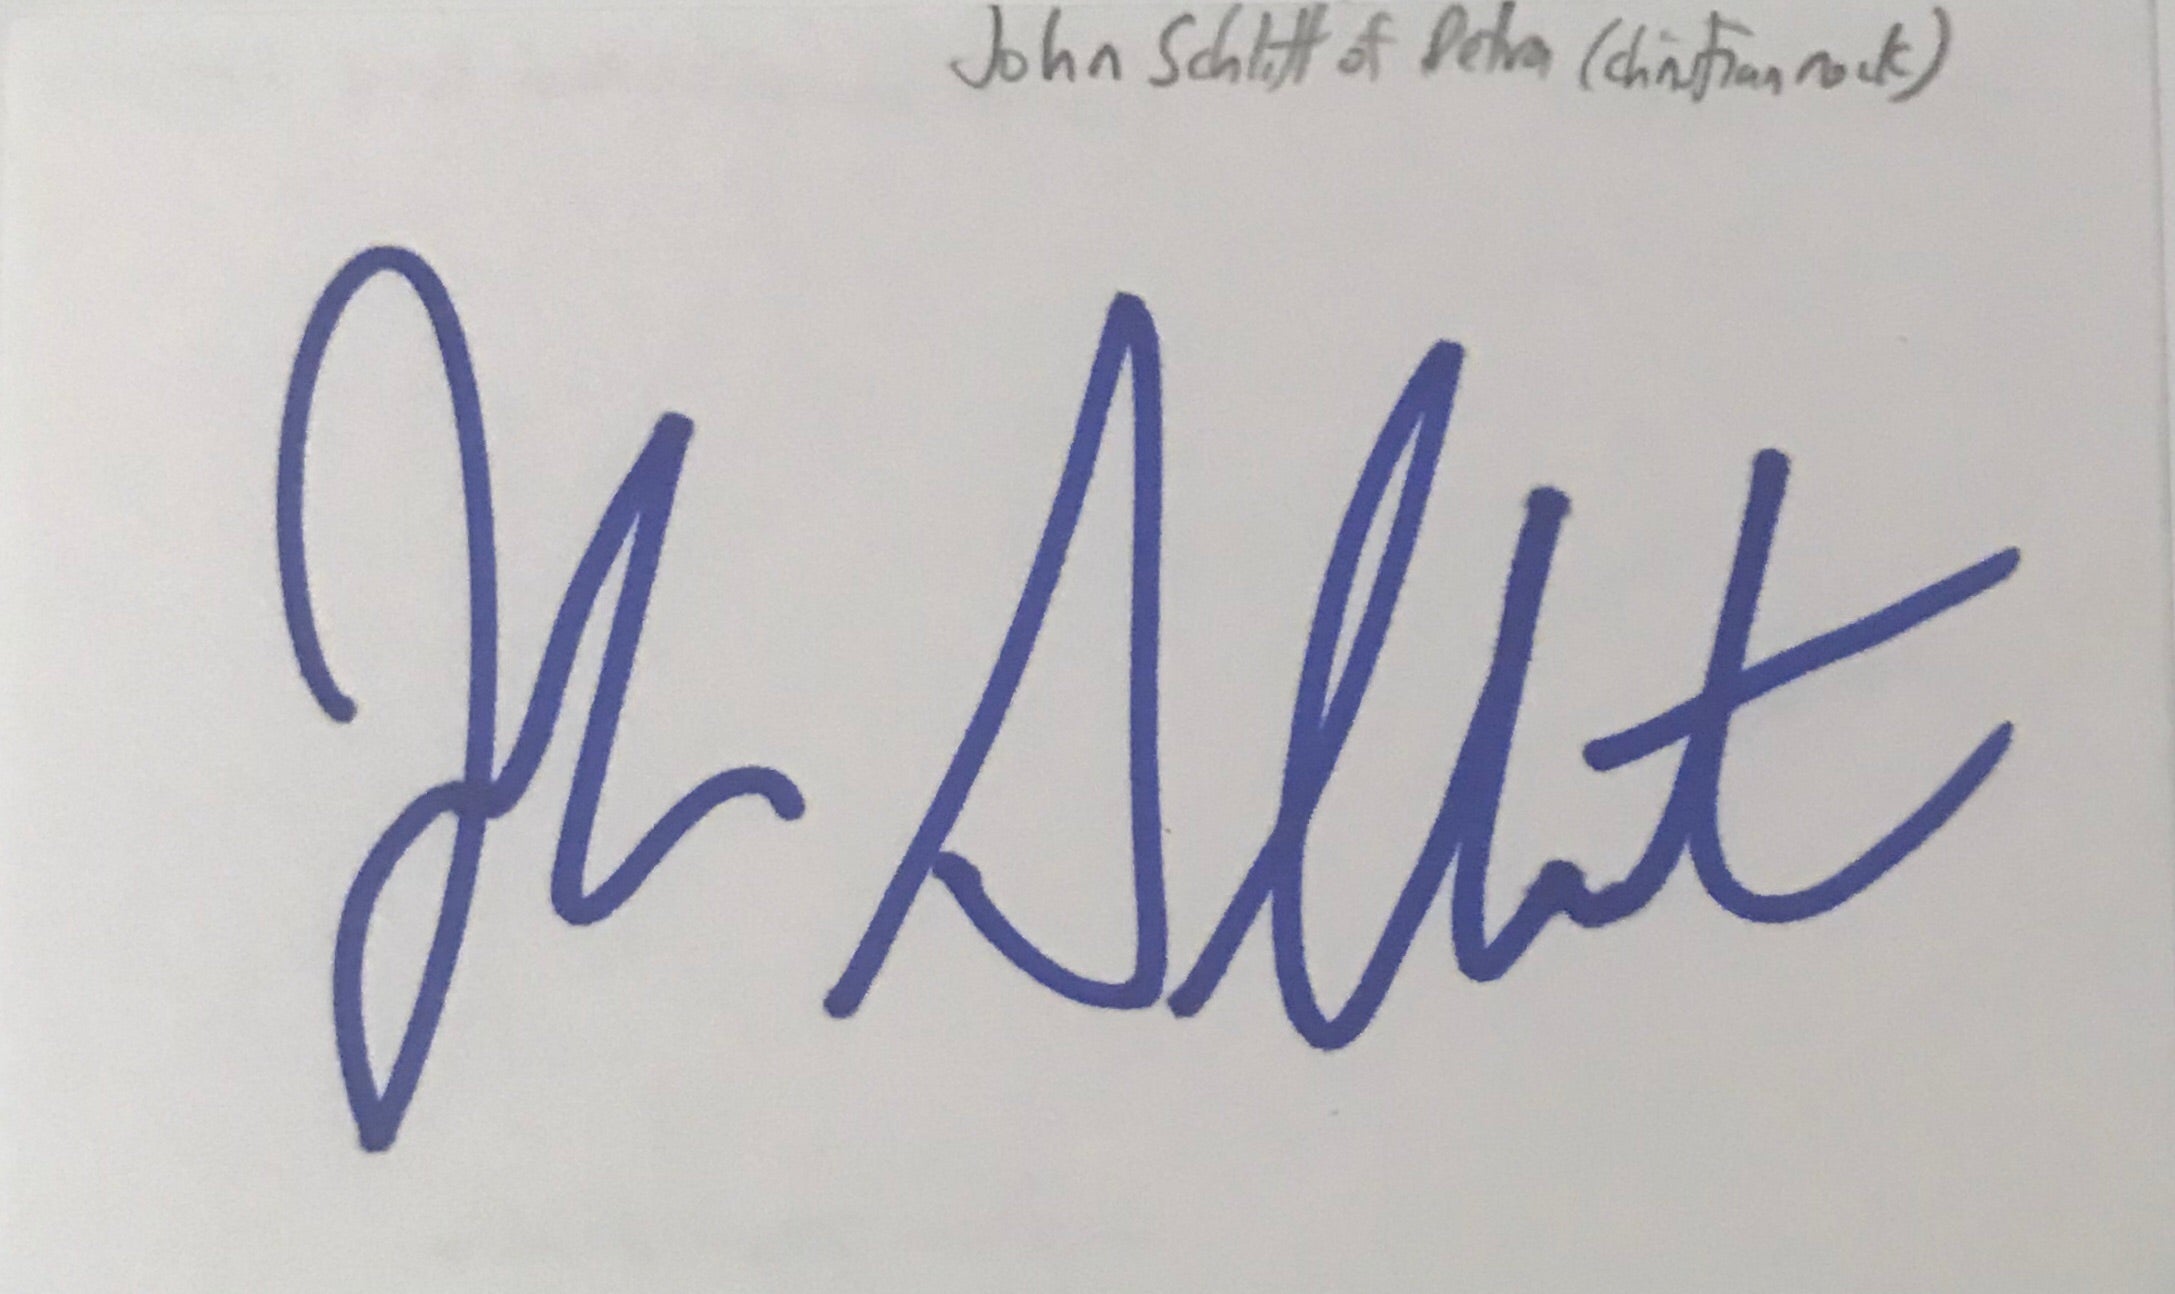 John Schlitt - Petra - Autographed Card